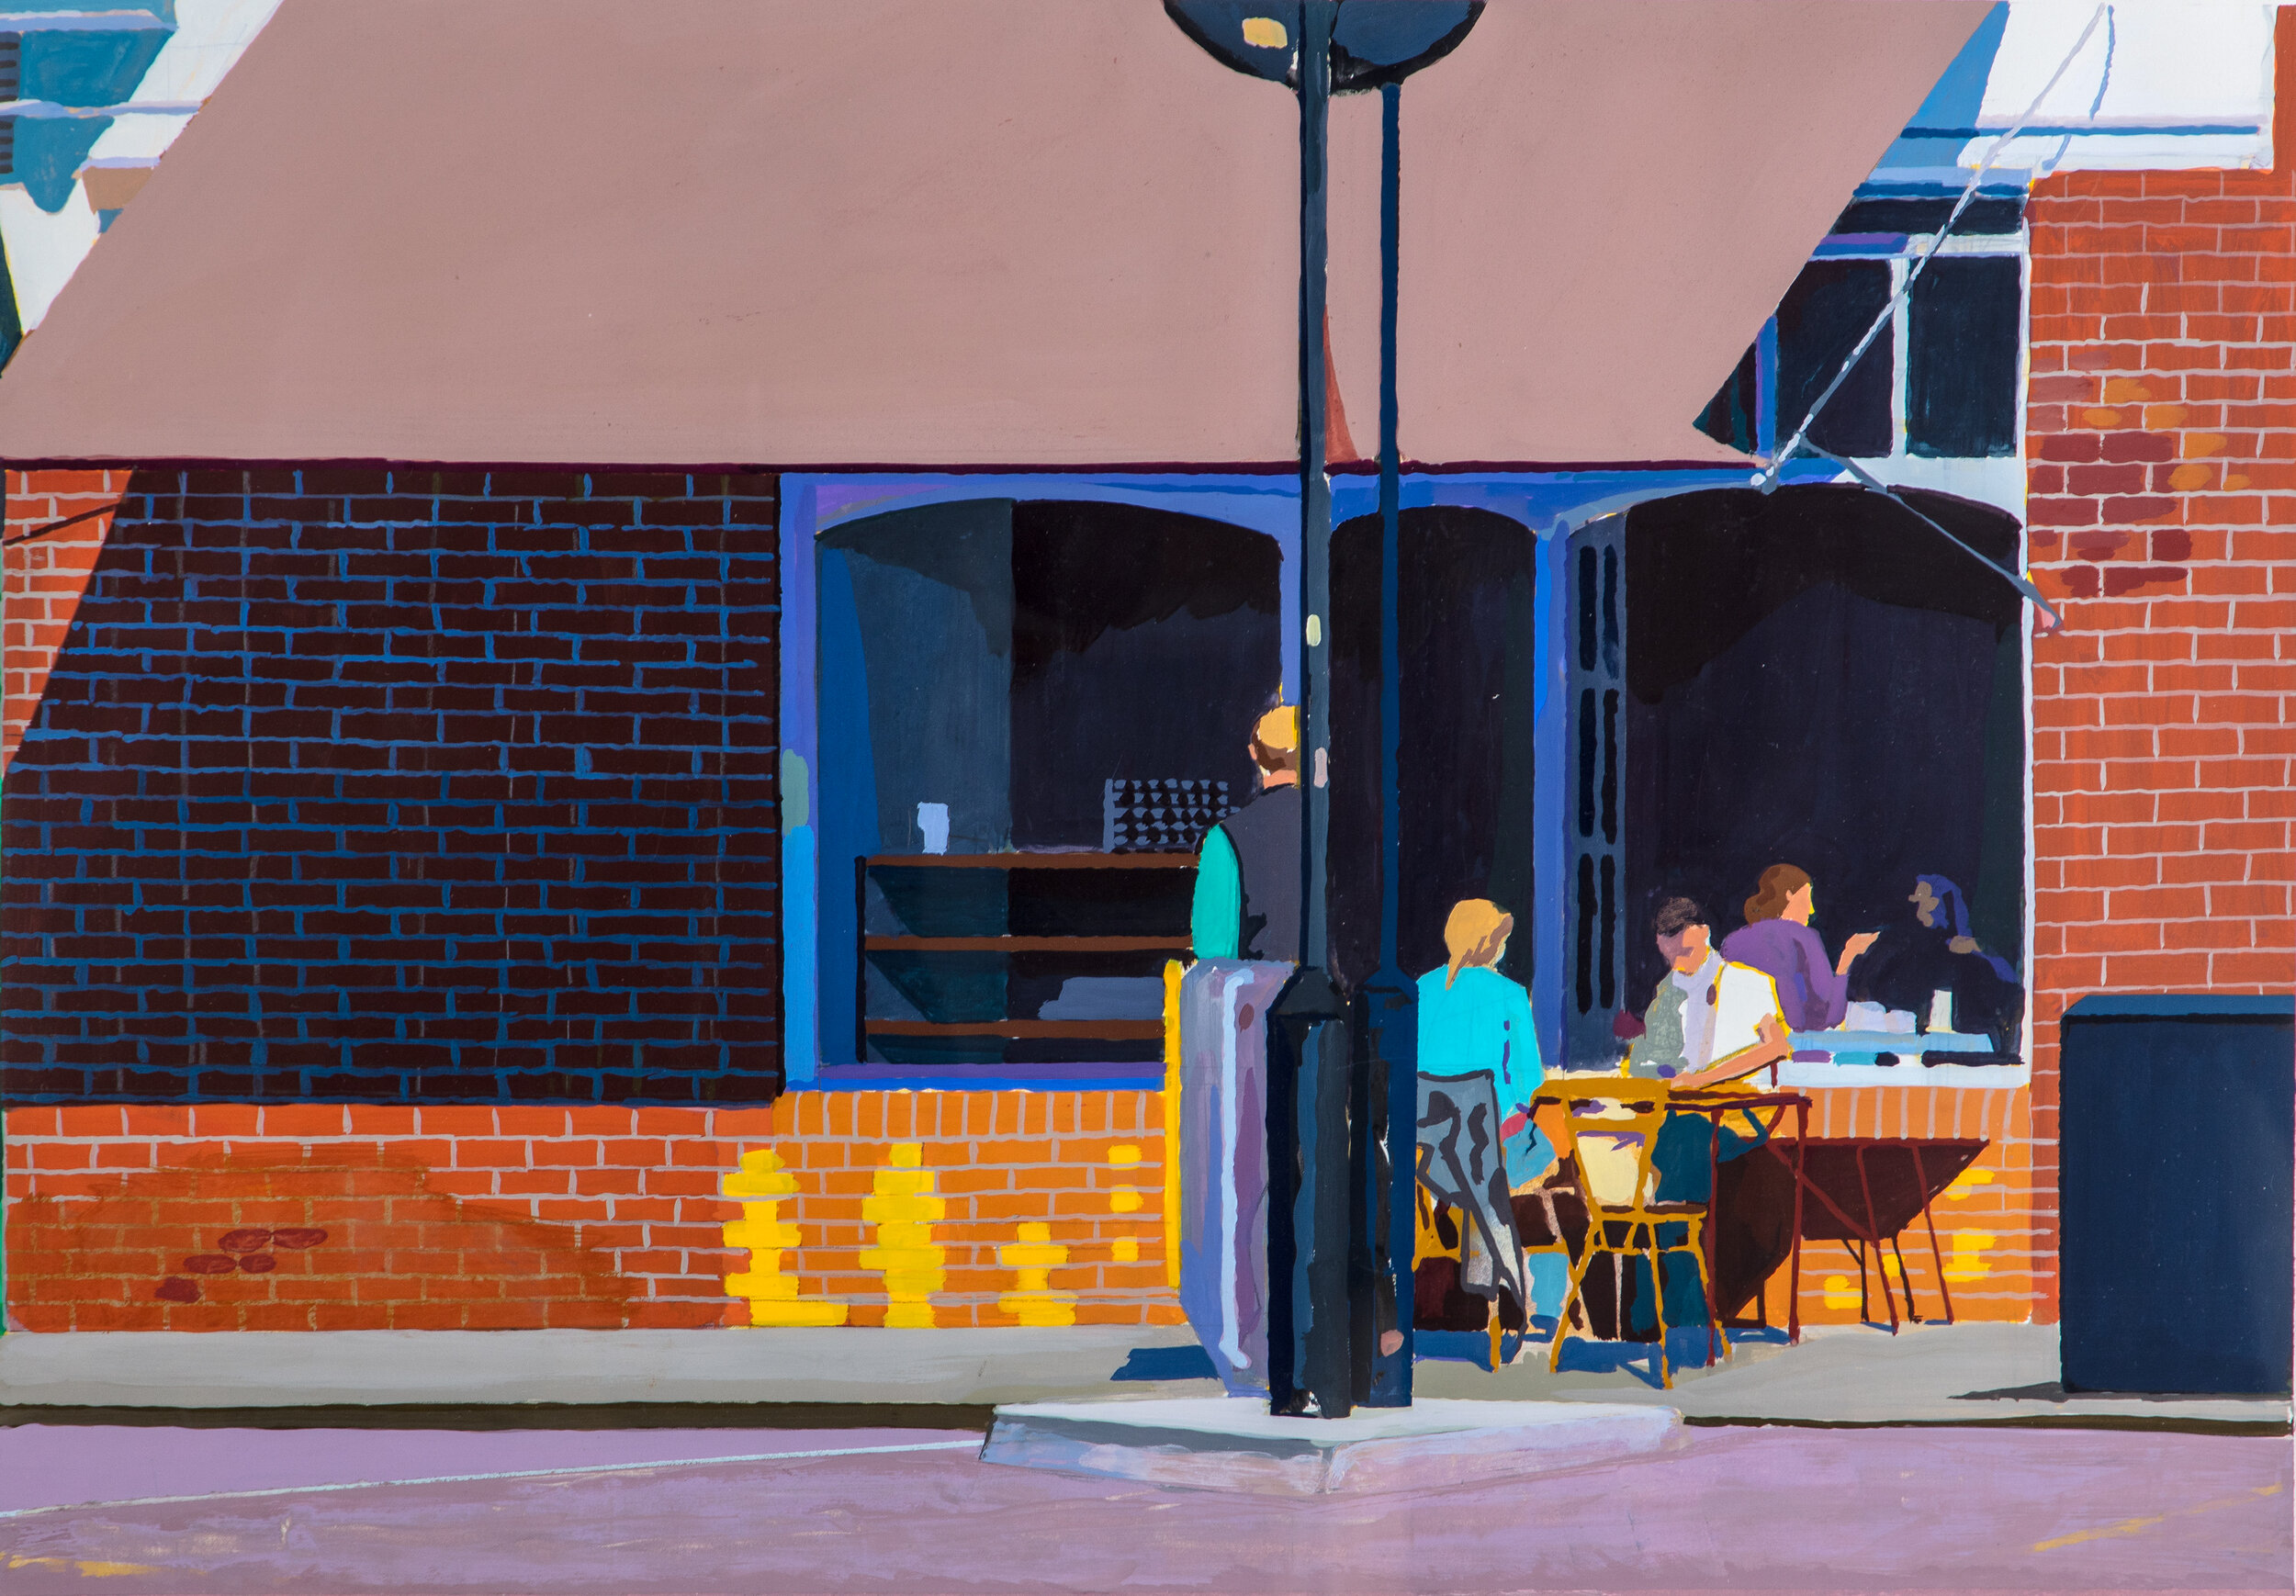  Shoreditch Cafe  Gouache on Paper  60cm x 80cm  2015   Sold    